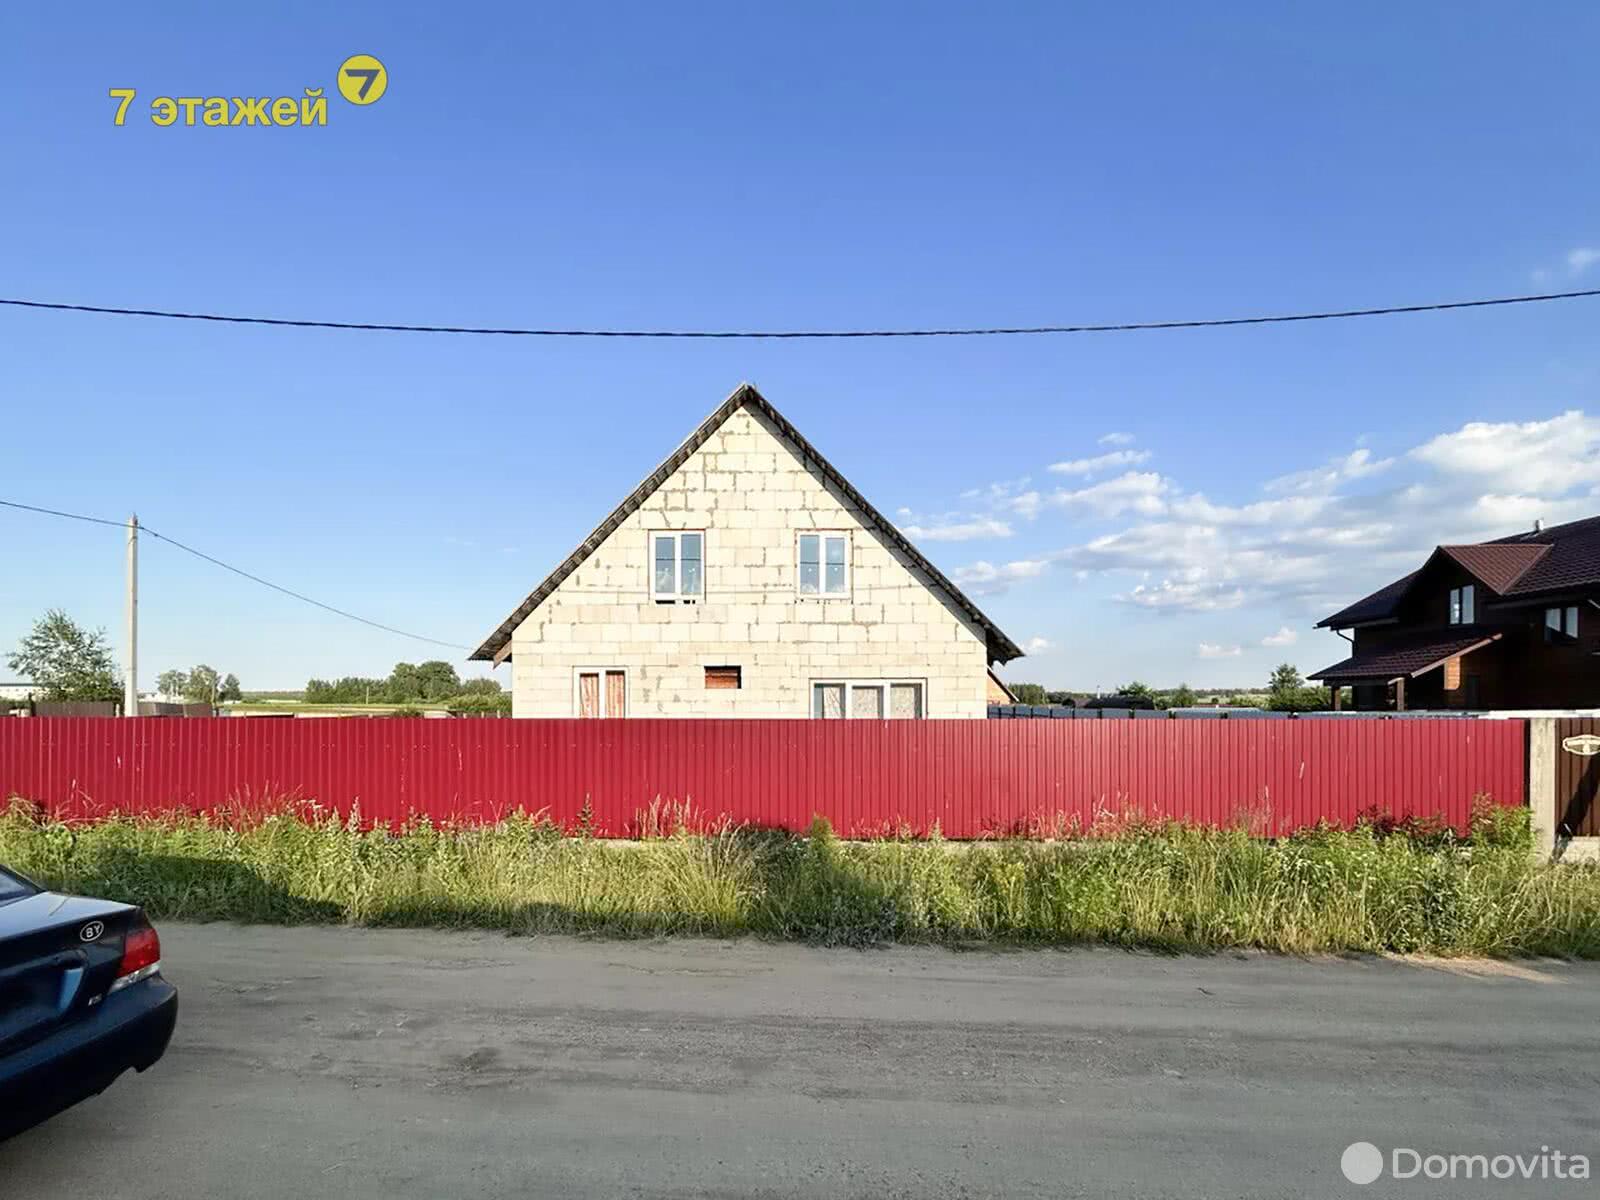 Продать 2-этажный дом в Тимошках, Минская область ул. Новосельская, 39900USD, код 635066 - фото 1